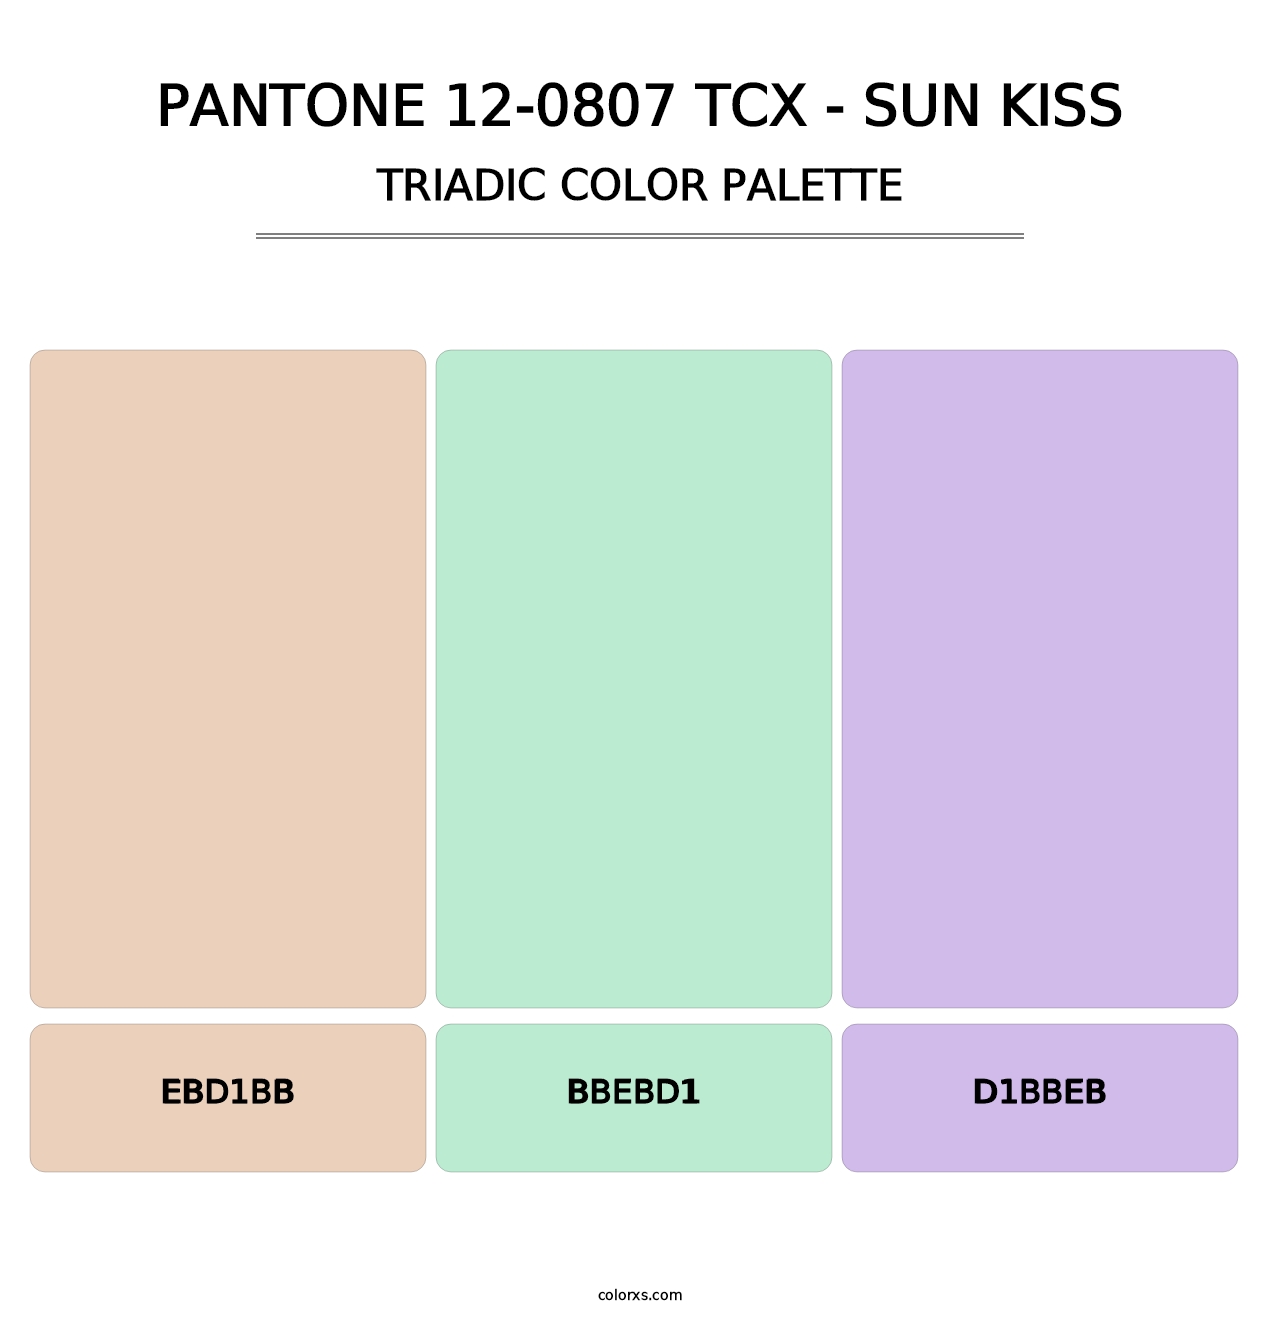 PANTONE 12-0807 TCX - Sun Kiss - Triadic Color Palette